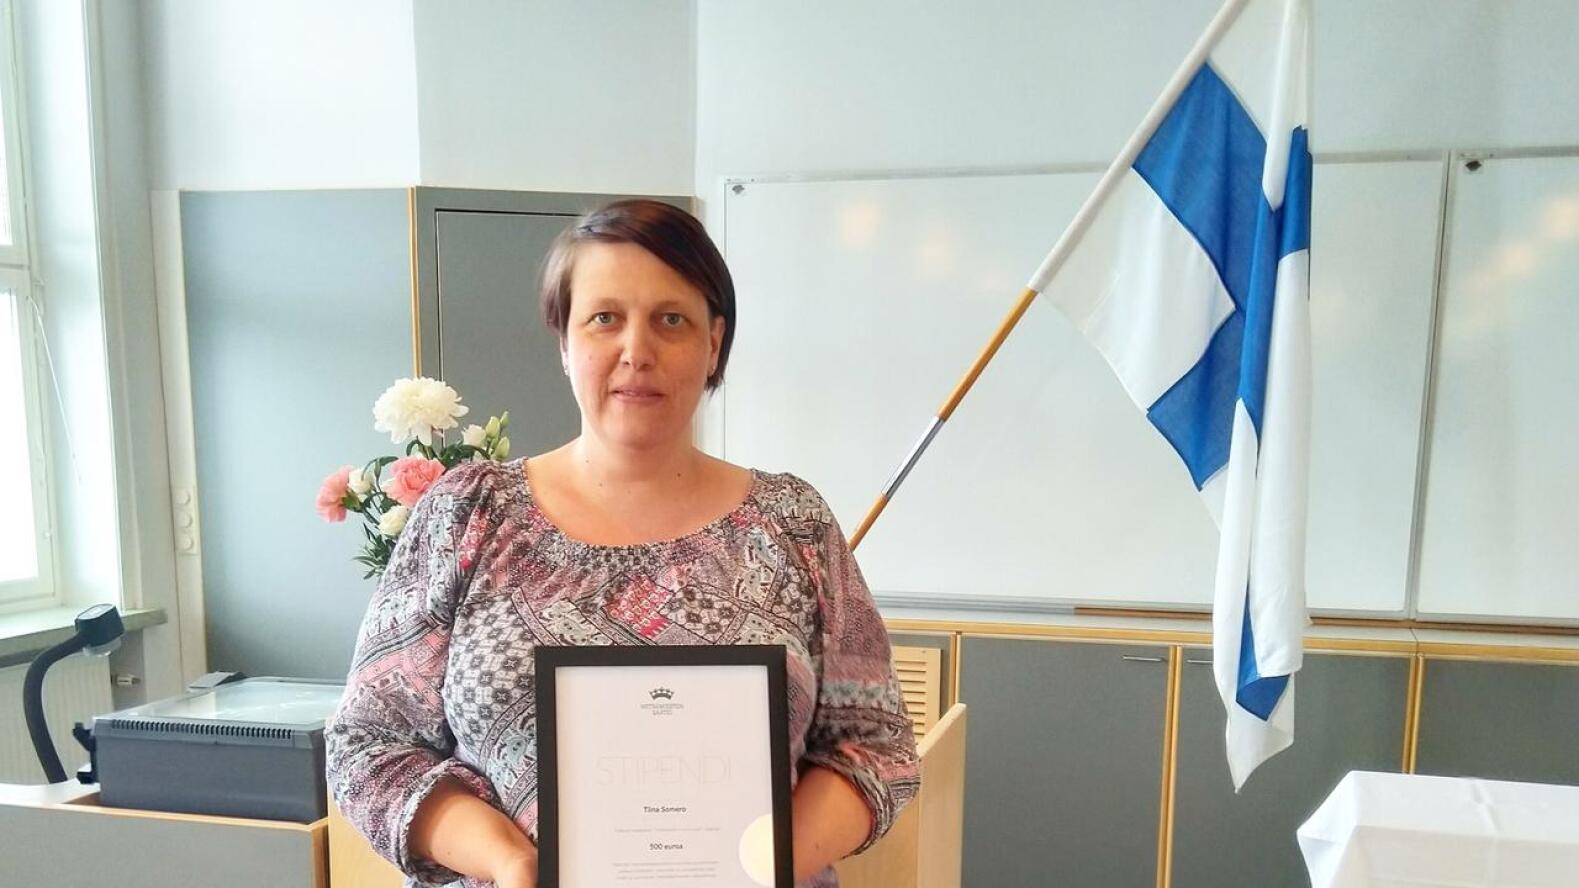 Sieviläiselle metsäopettaja Tiina Somerolle myönnettiin Metsämiesten Säätiön ”Työyhteisön hyvä tyyppi” -stipendi.